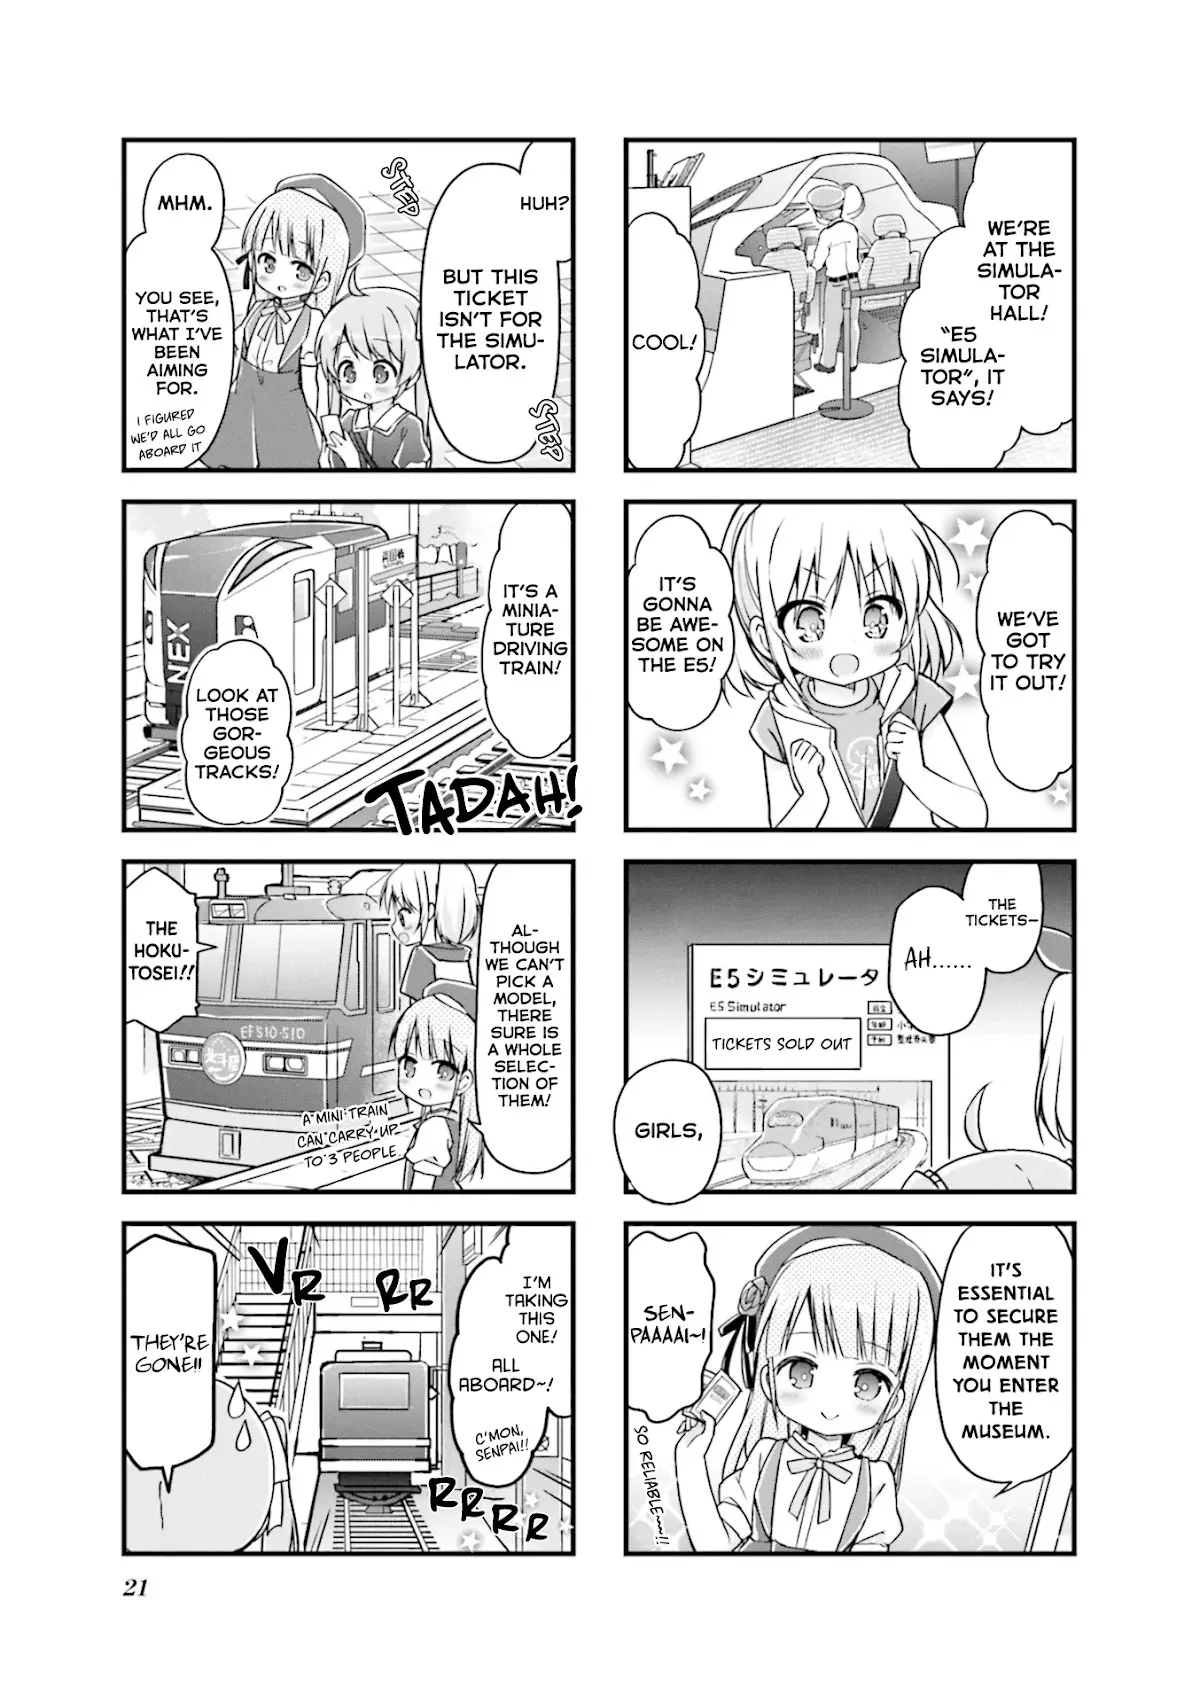 Hatsukoi*rail Trip - 15 page 5-7d0d13d6